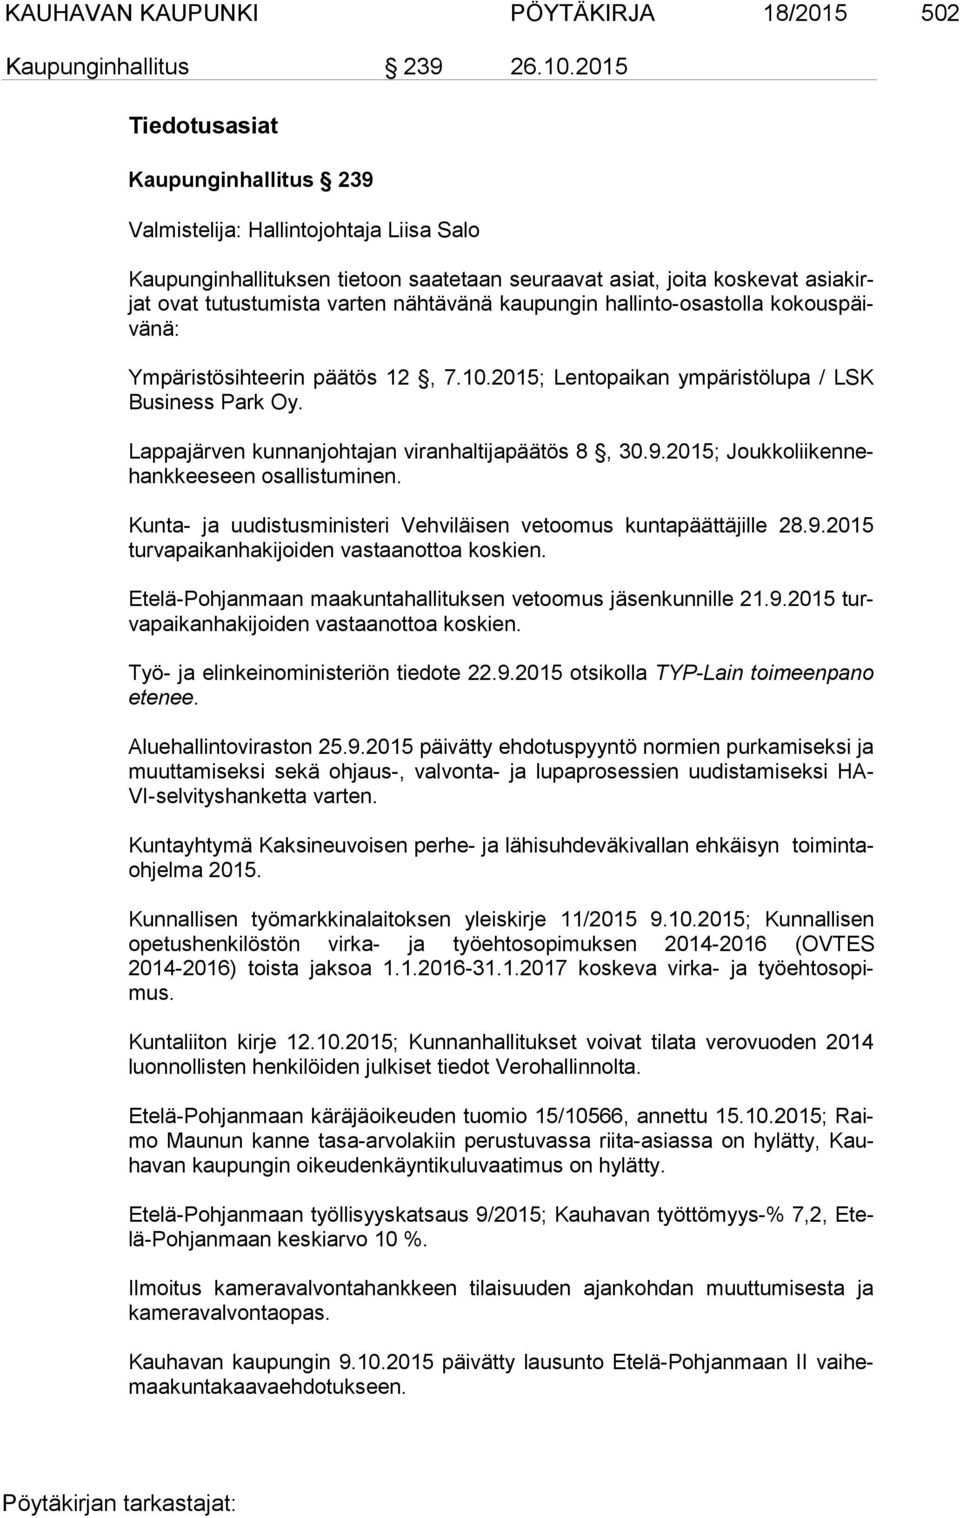 kaupungin hallinto-osastolla ko kous päivä nä: Ympäristösihteerin päätös 12, 7.10.2015; Lentopaikan ympäristölupa / LSK Busi ness Park Oy. Lappajärven kunnanjohtajan viranhaltijapäätös 8, 30.9.